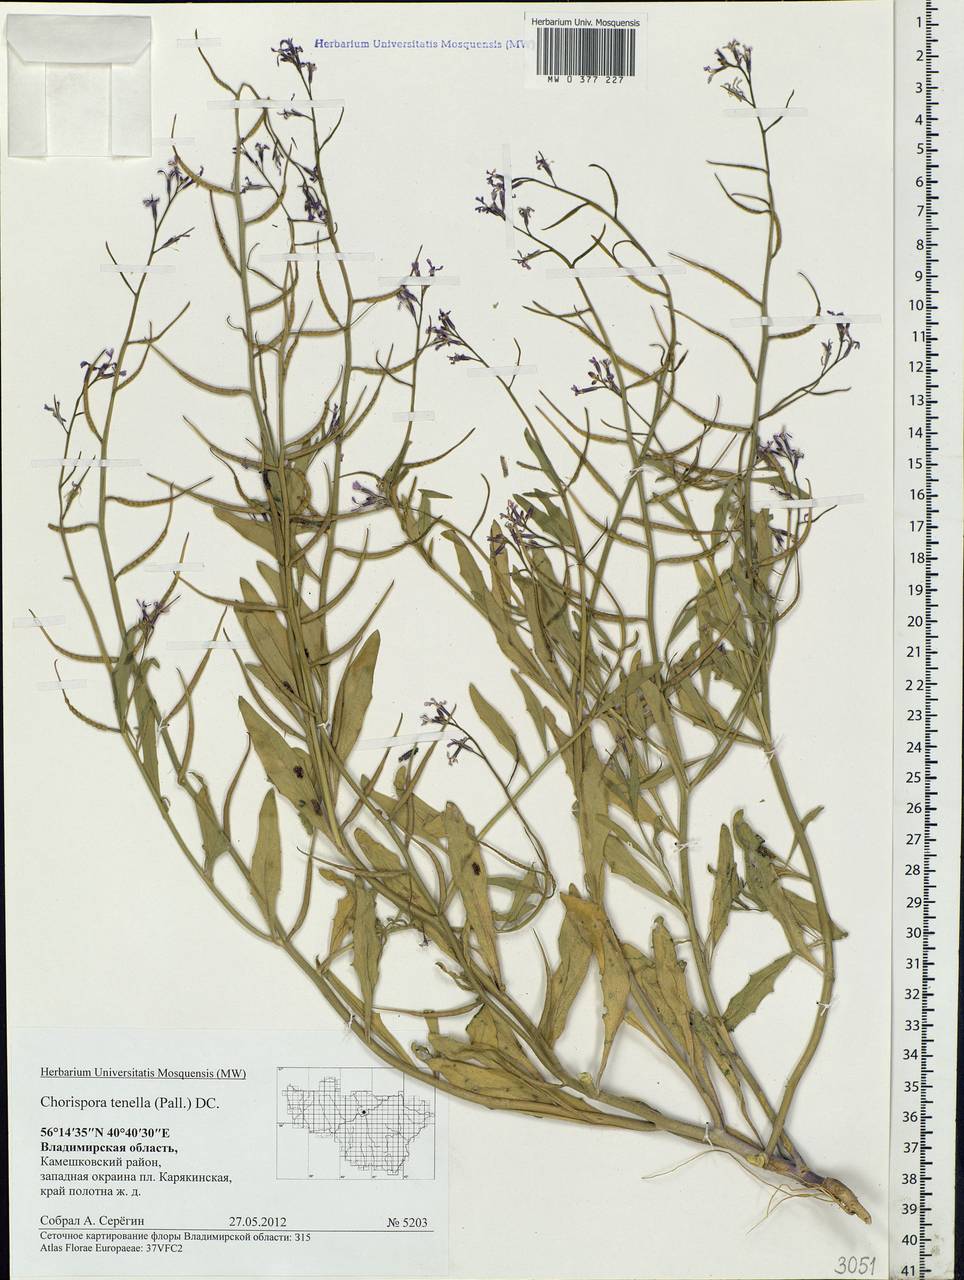 Chorispora tenella (Pall.) DC., Eastern Europe, Central region (E4) (Russia)